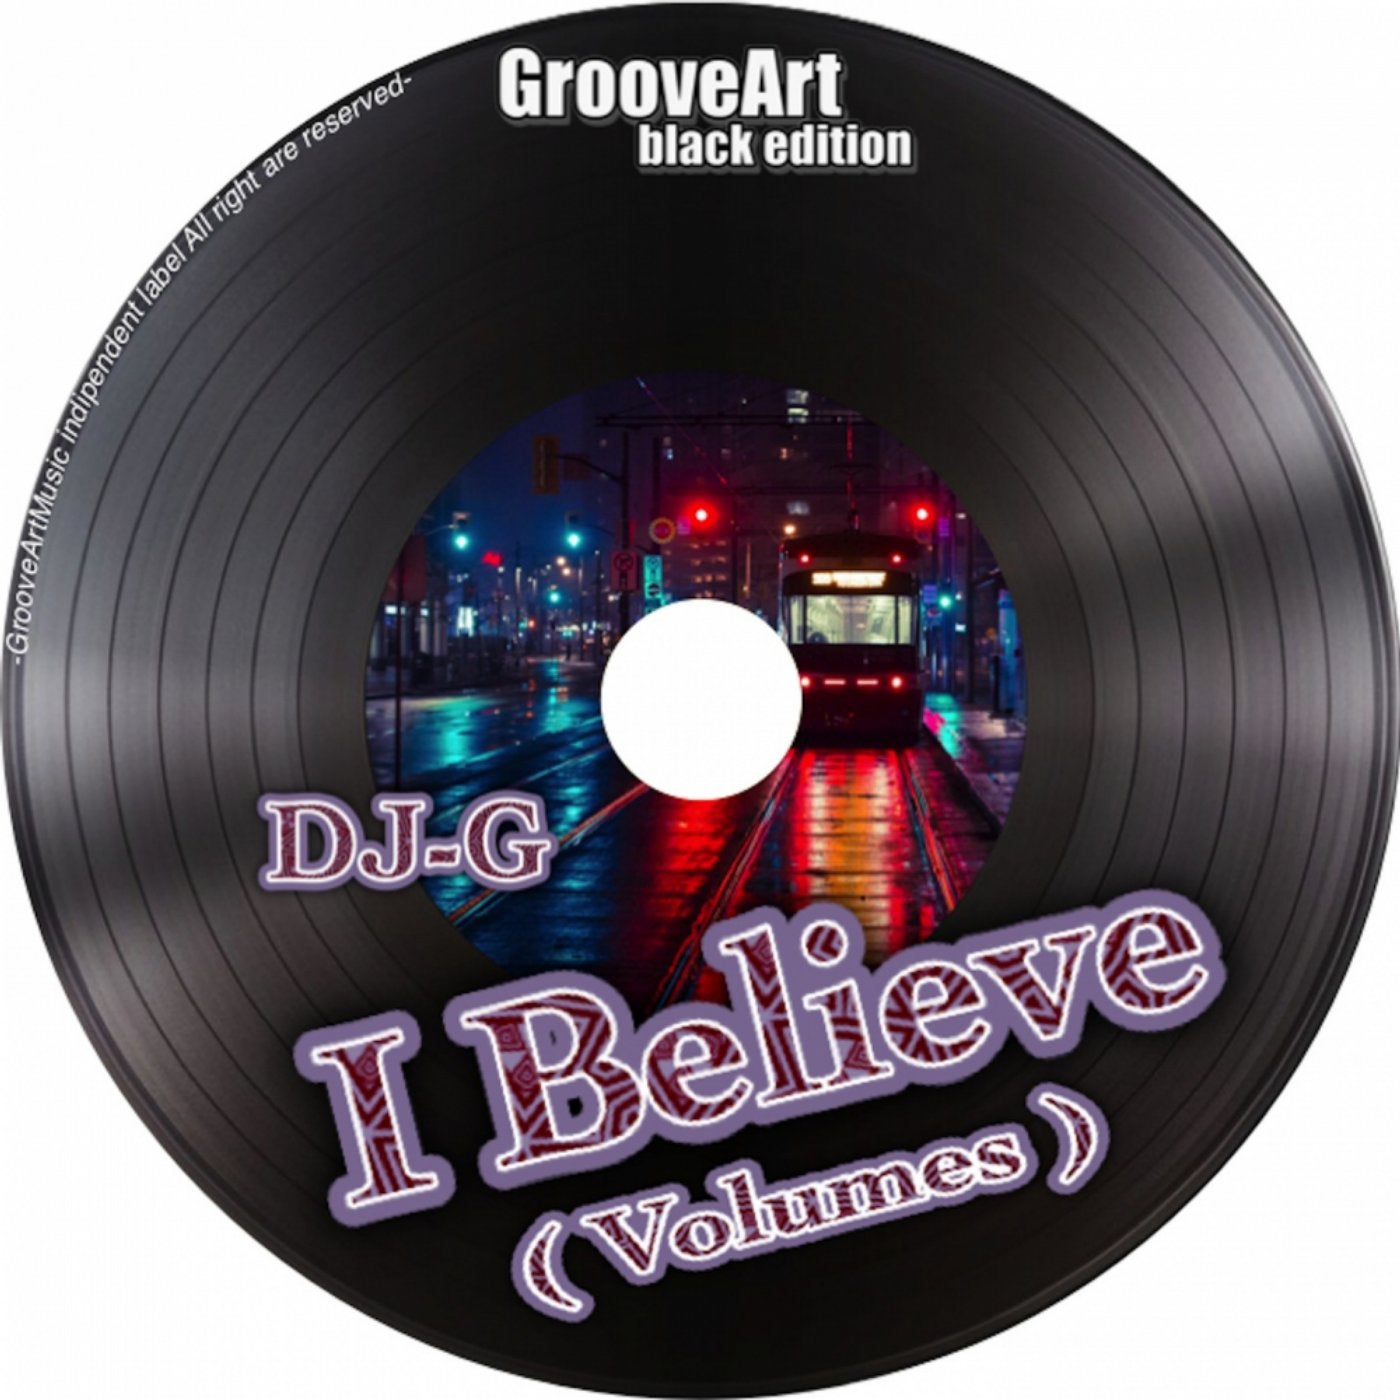 I Believe (Volumes)